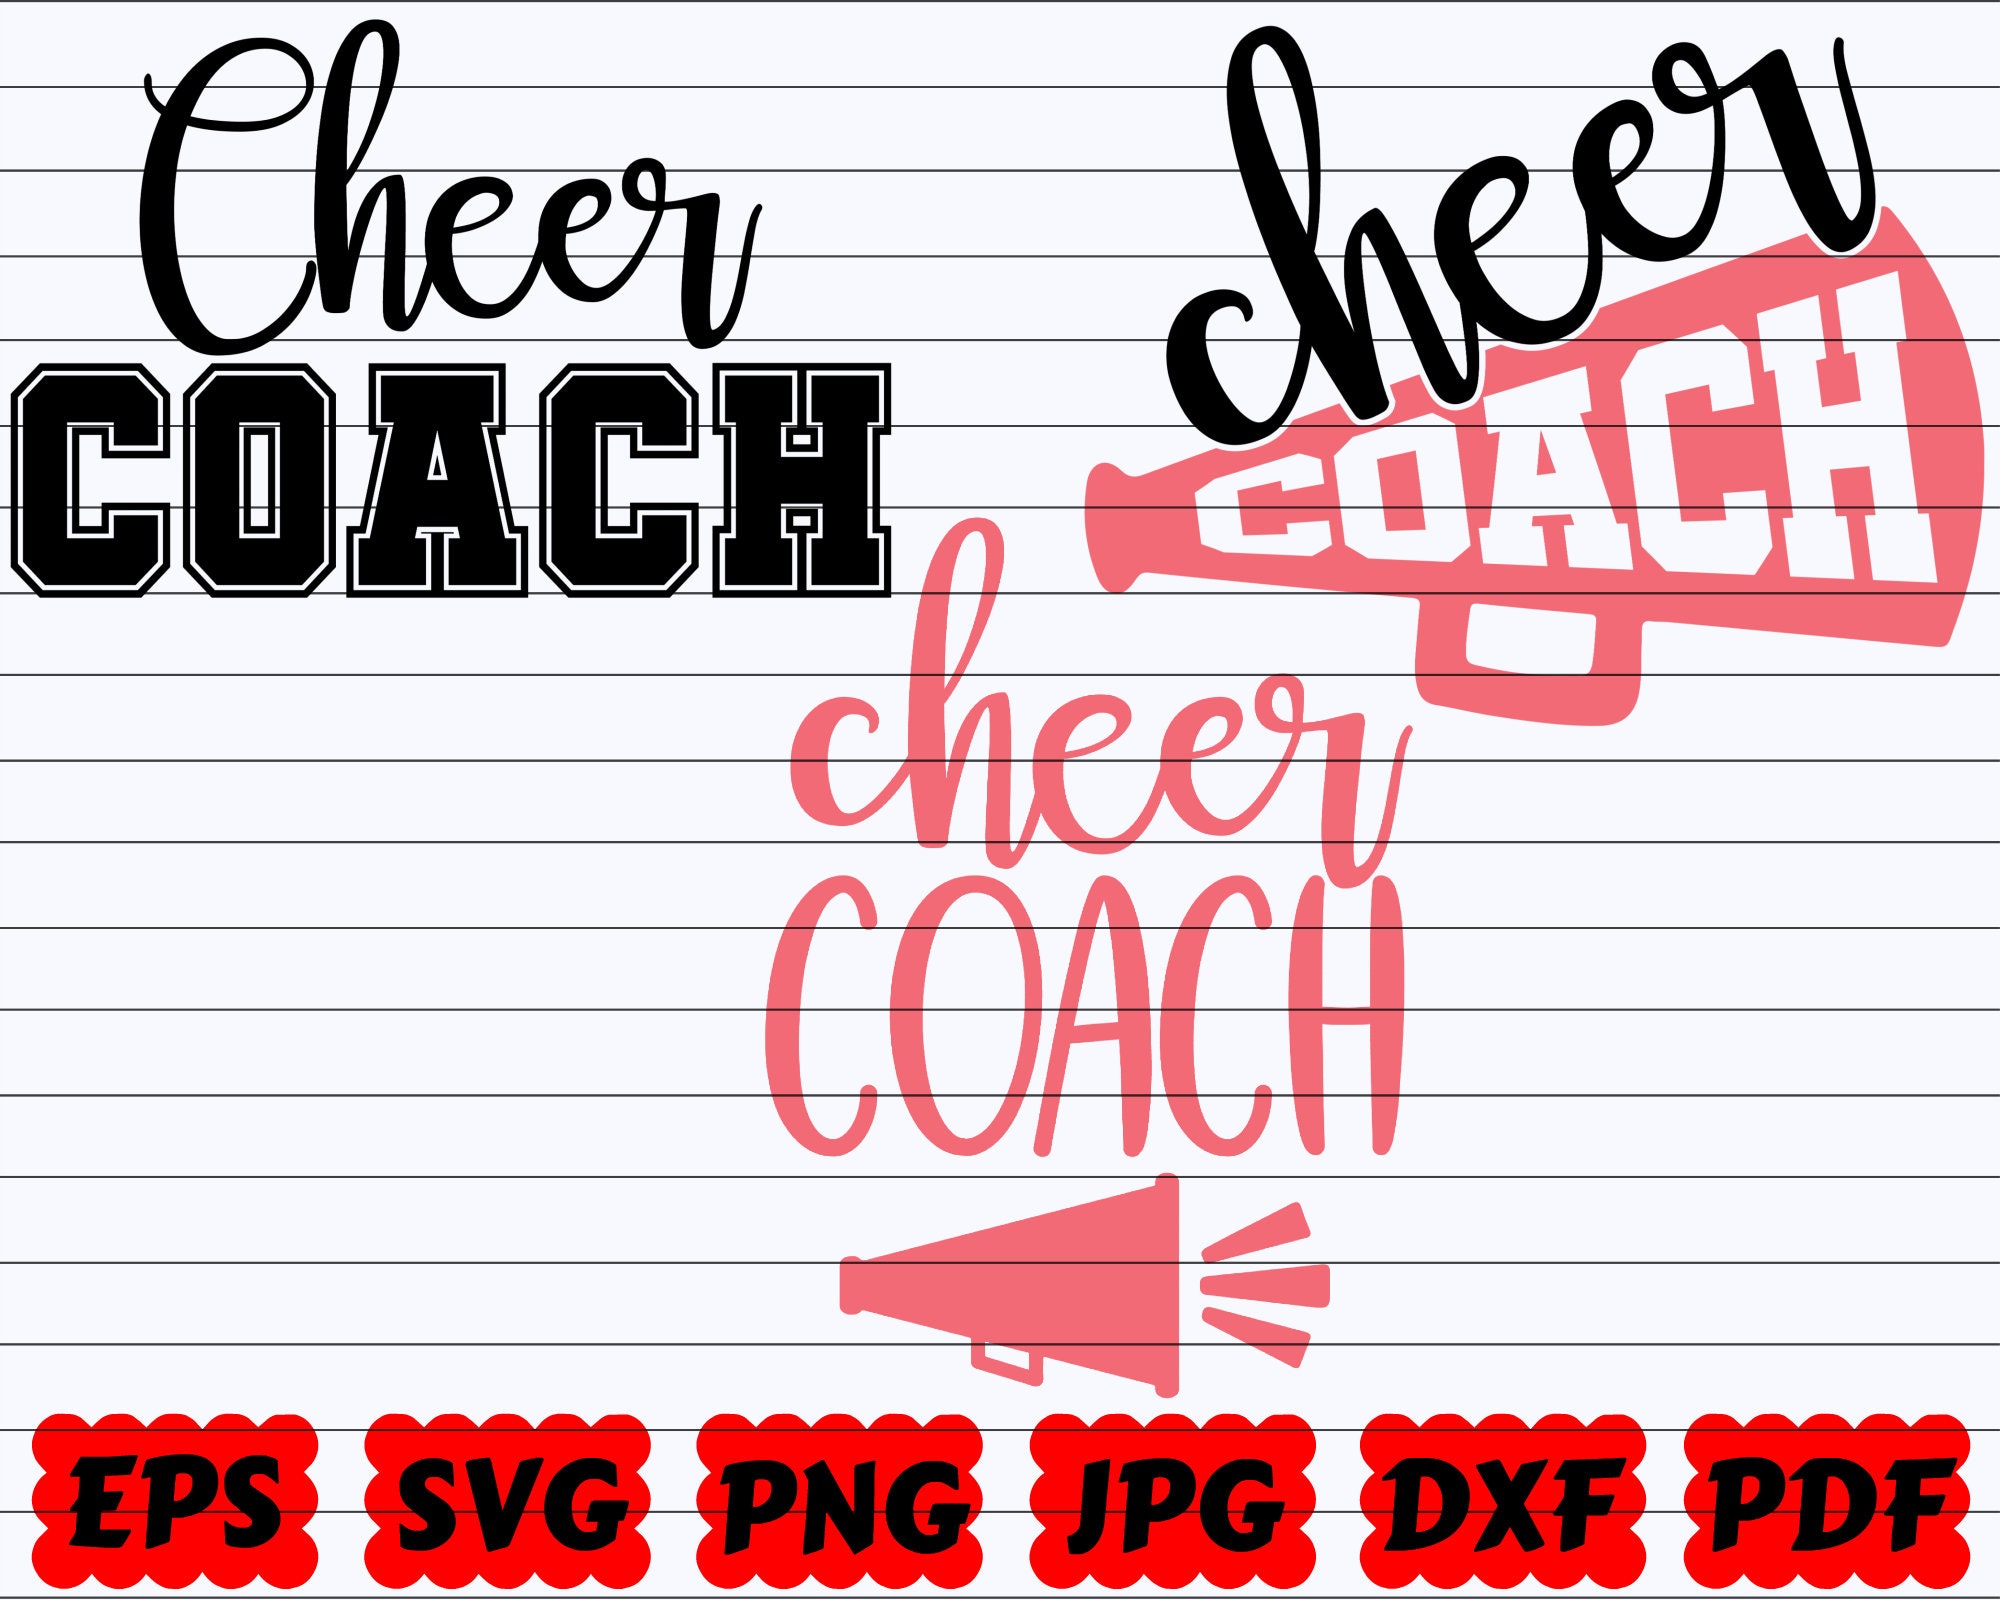 Cheer Coach SVG Coach SVG Cheerleader Coach SVG Coach | Etsy